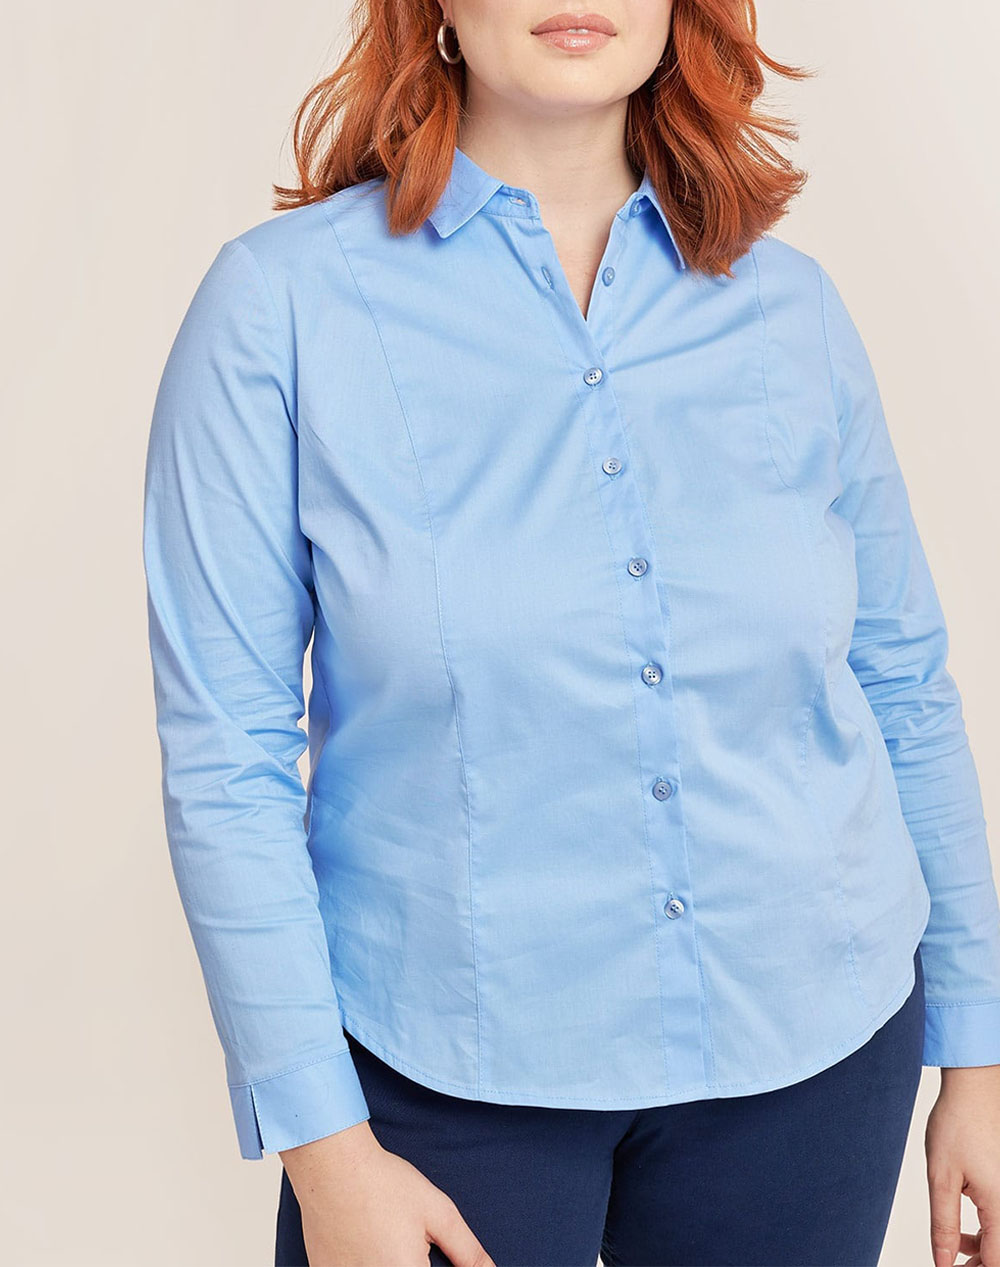 Βαμβακερό πουκάμισο σε κλασσική γραμμή, με μακρύ μανίκι, γιακας πουκάμισου και κλείσιμο με κουμπιά μπροστά. (Σύνθεση: 97% Βαμβάκι, 3% Σπαντεξ)